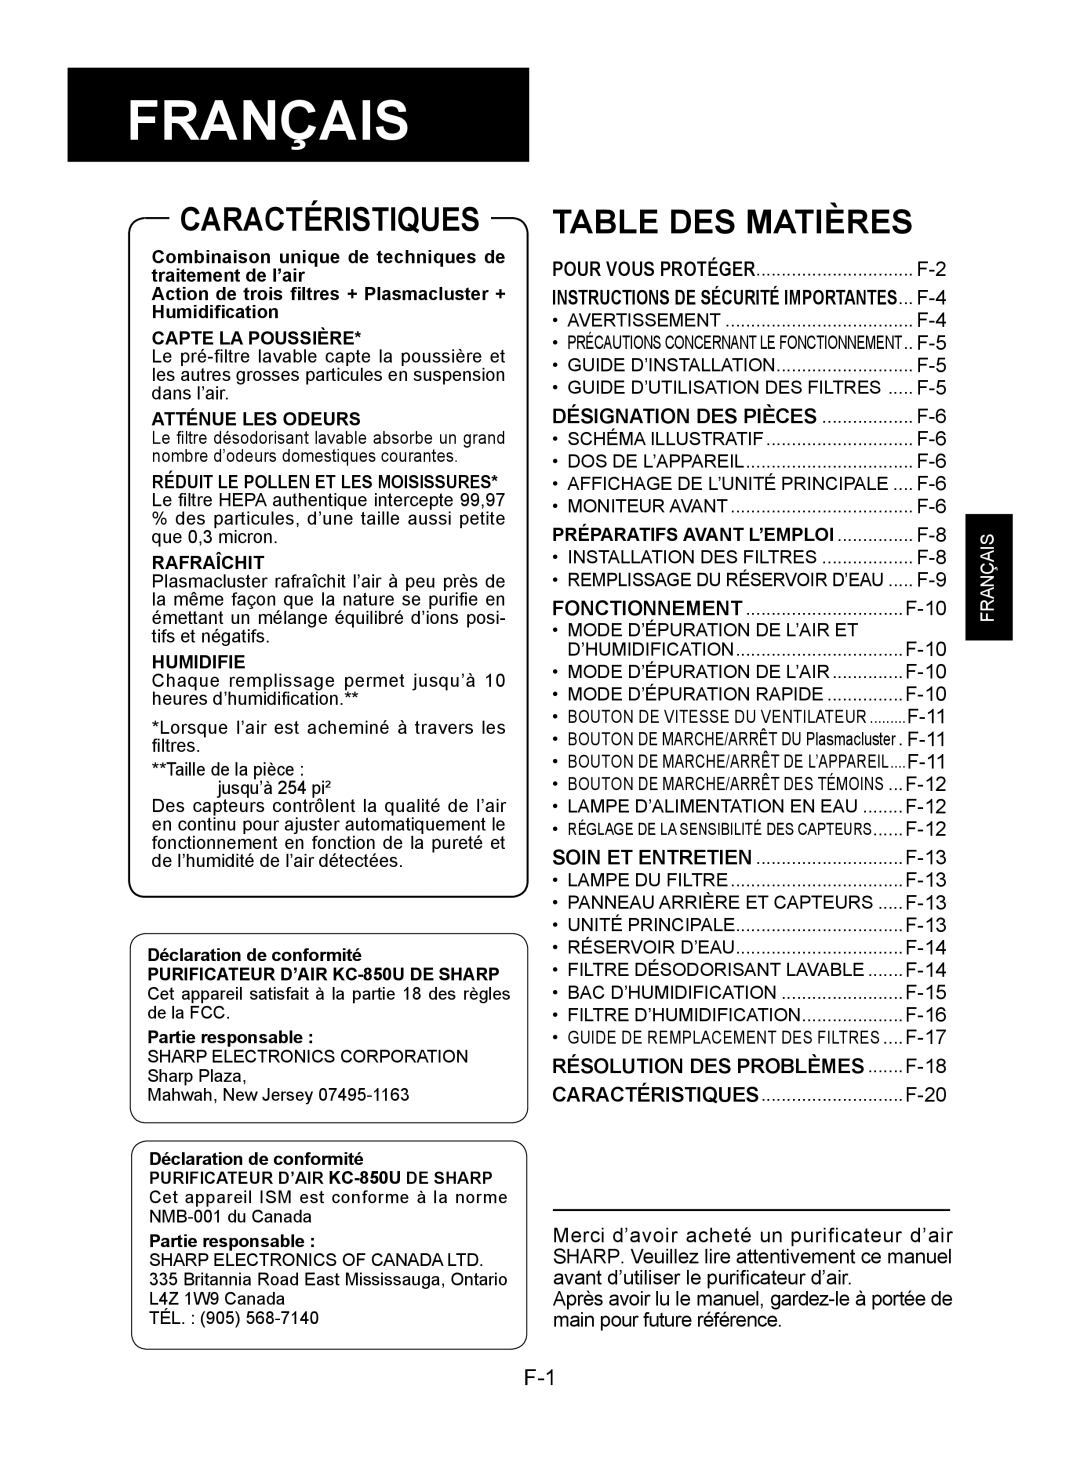 Sharp KC-850U operation manual Français, Caractéristiques, Table Des Matières 